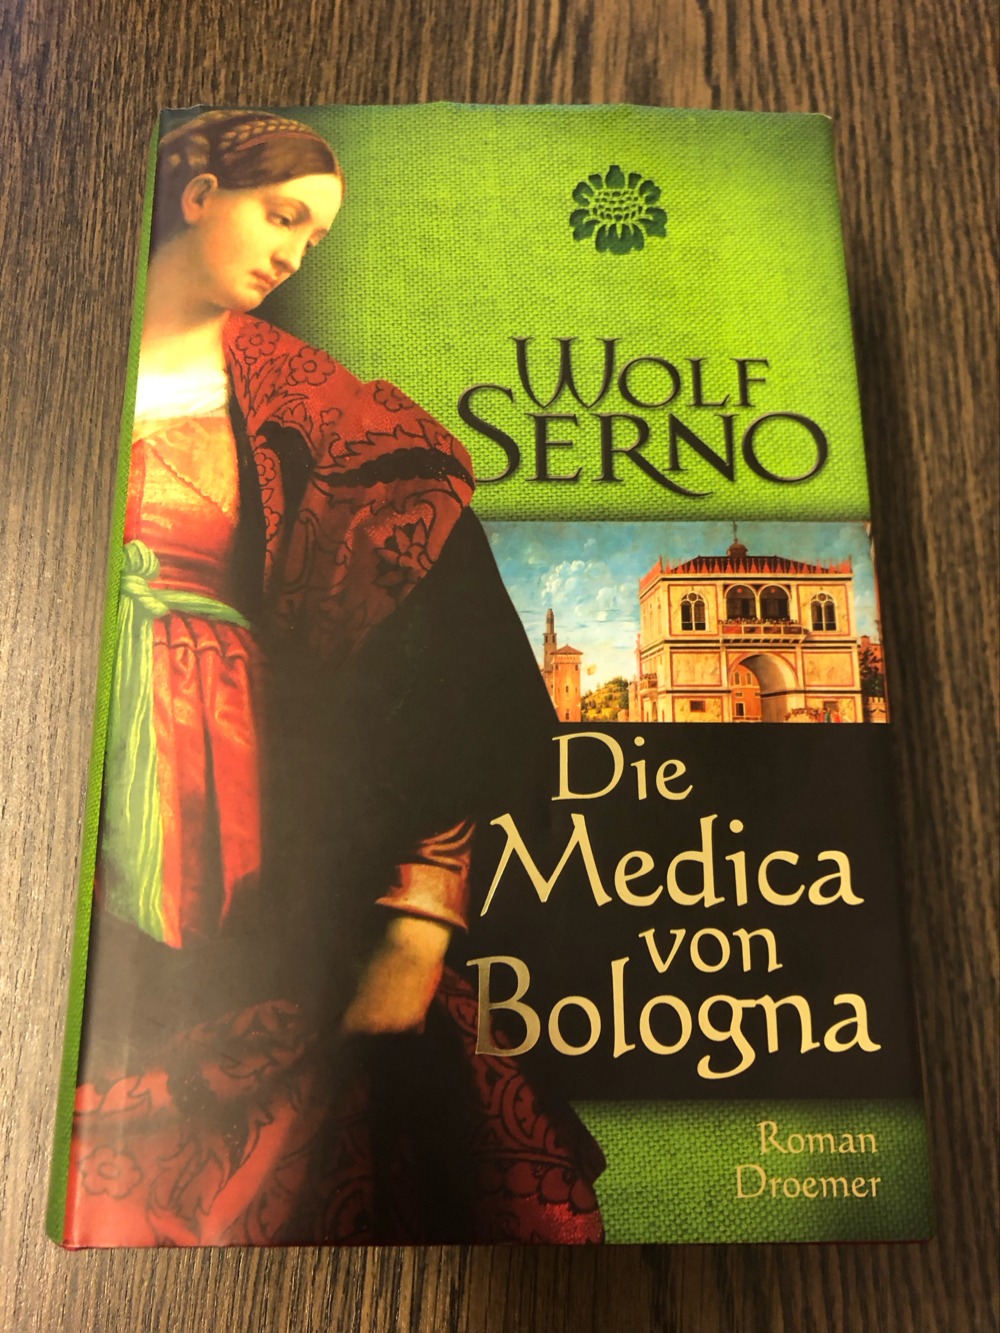 Die Medica von Bologna, Wolf Serno